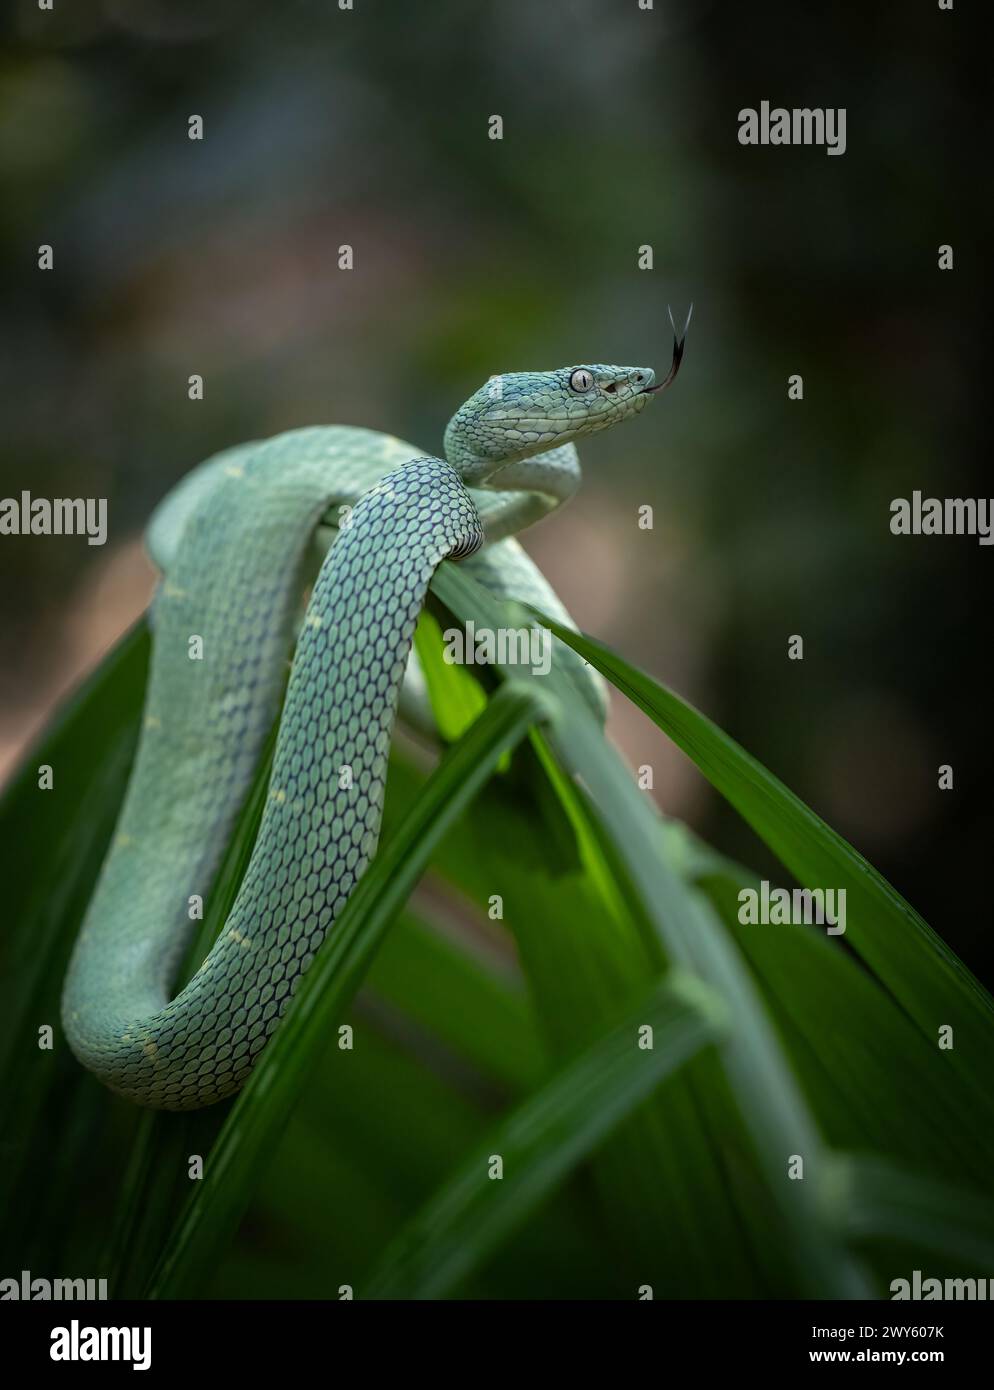 A venomous viper snake in Costa Rica Stock Photo